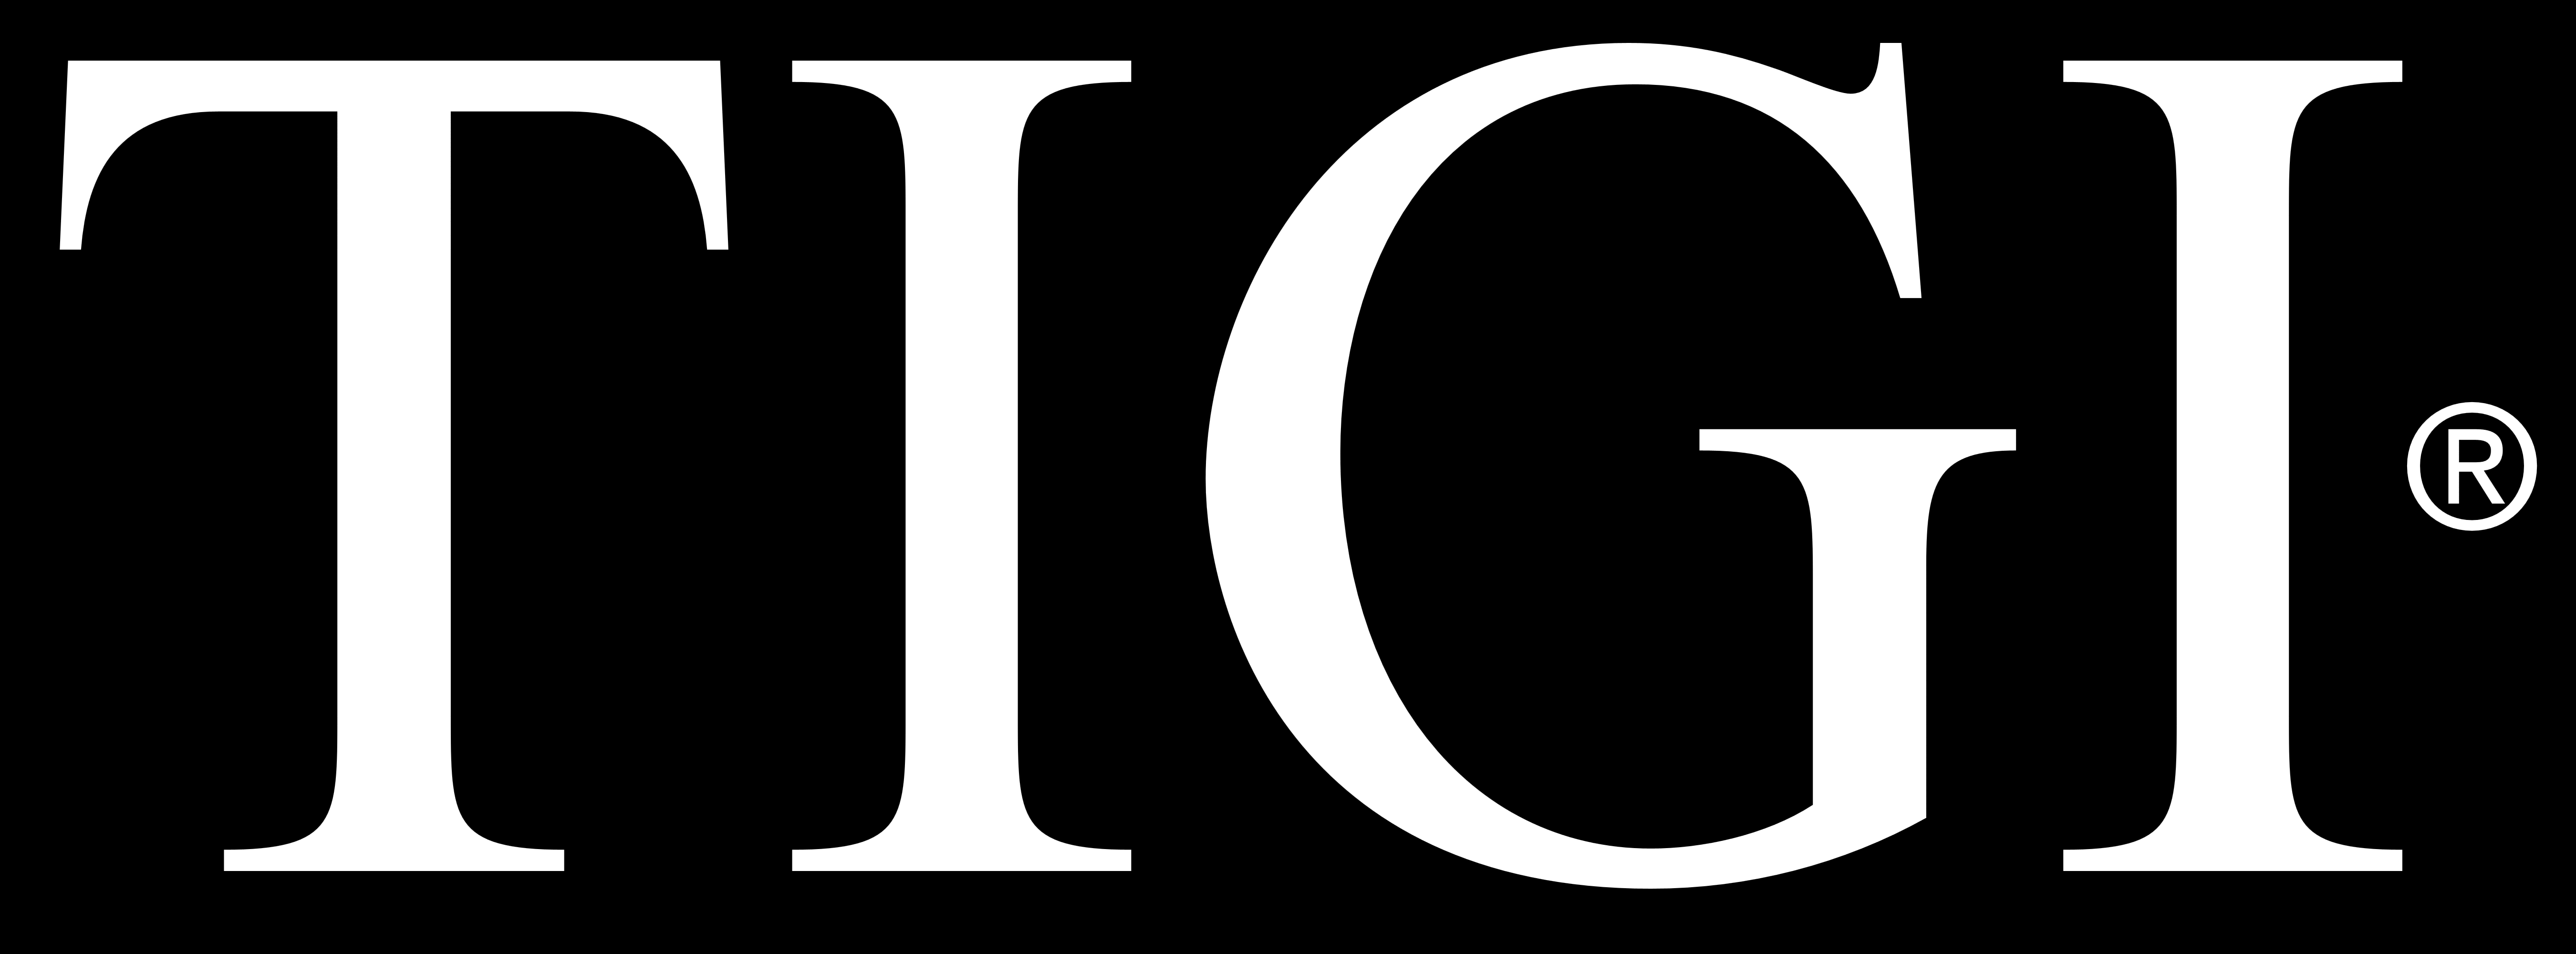 TIGI Logo - Tigi Professional – Logos Download